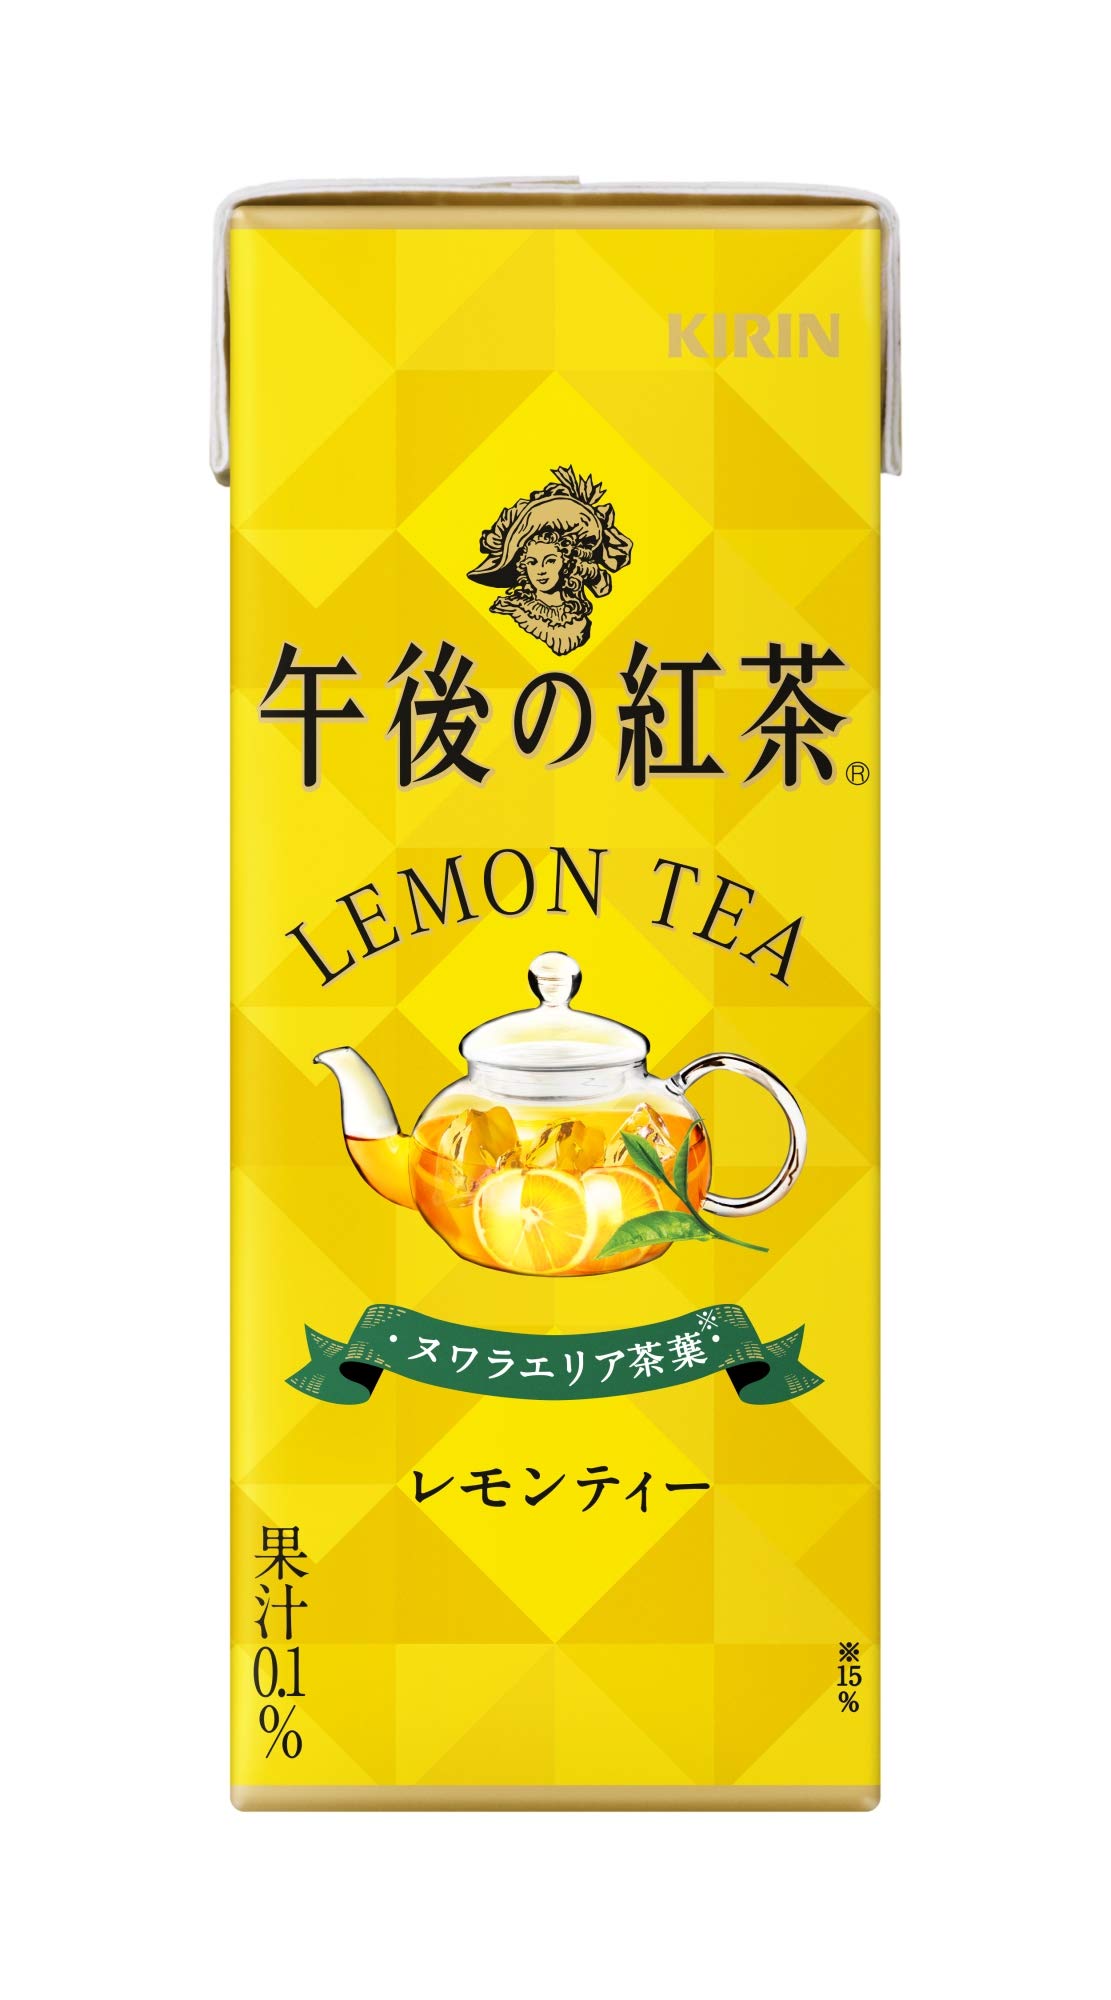 値下げ値下げキリン 午後の紅茶 レモンティー 1.5L お茶飲料